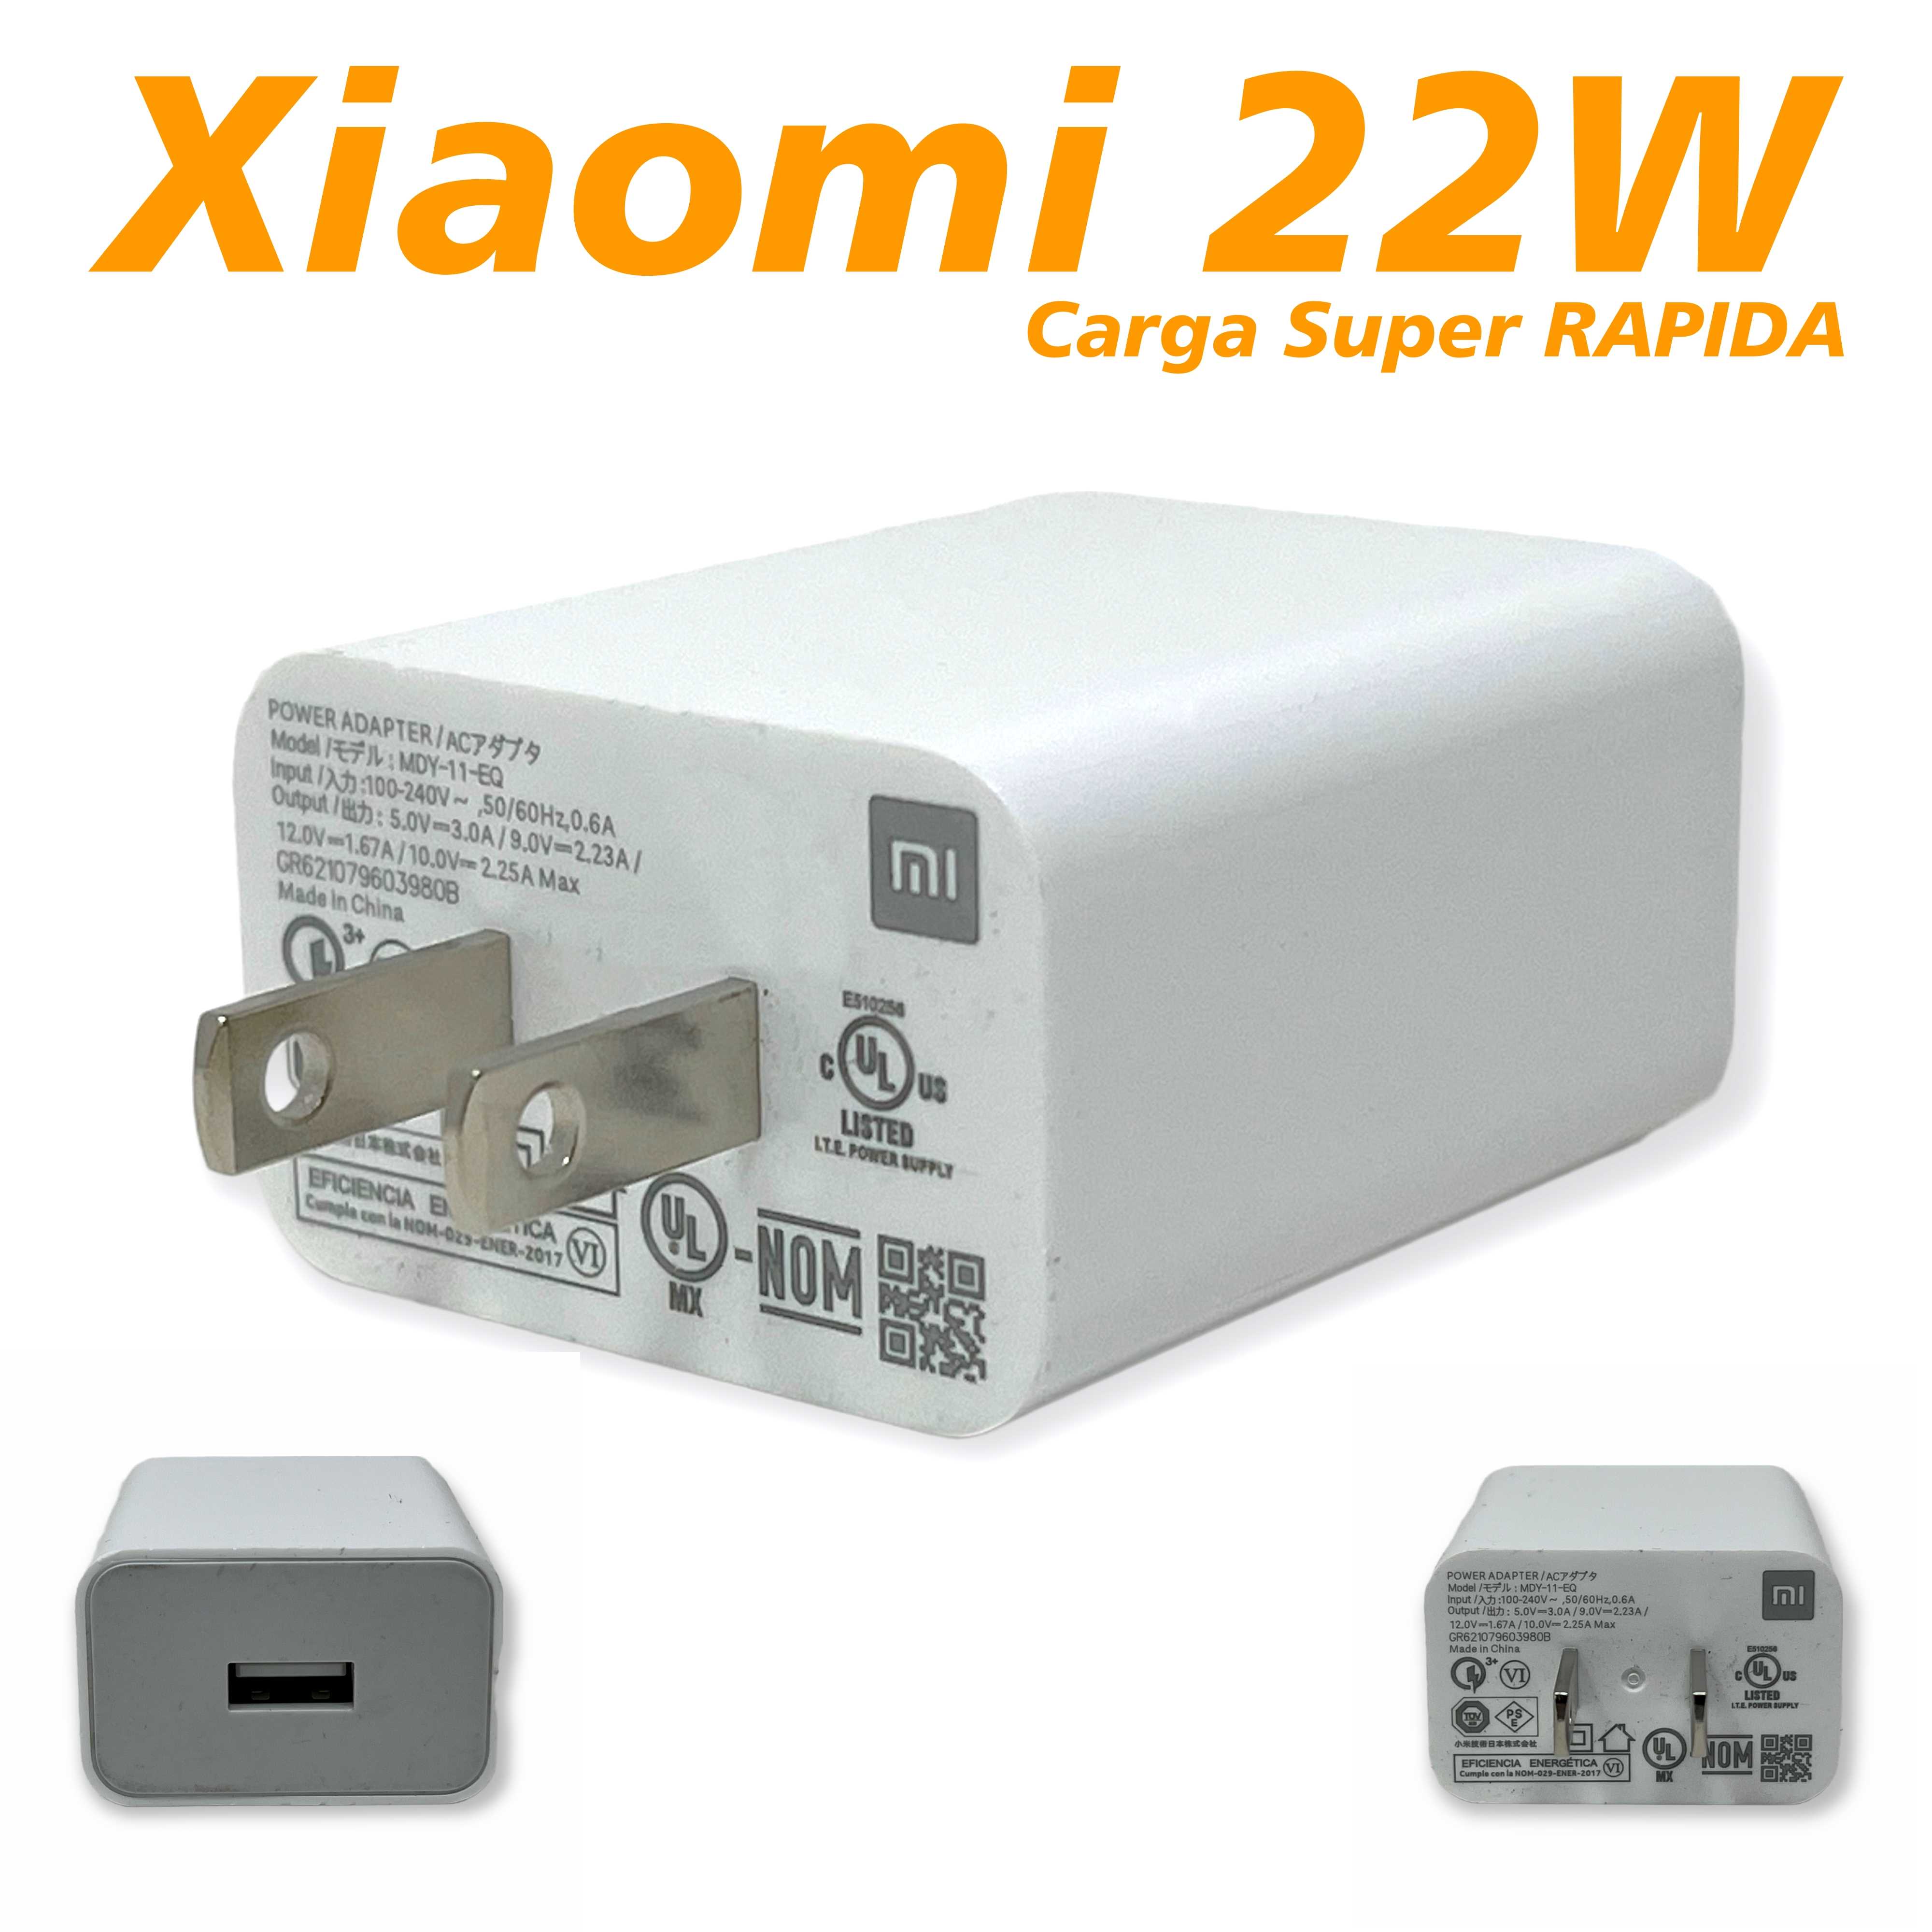 CARGADOR 220V USB XIAOMI 22.5W ORIGINAL PARA RECTA (CARGA SUPER RAPIDA)